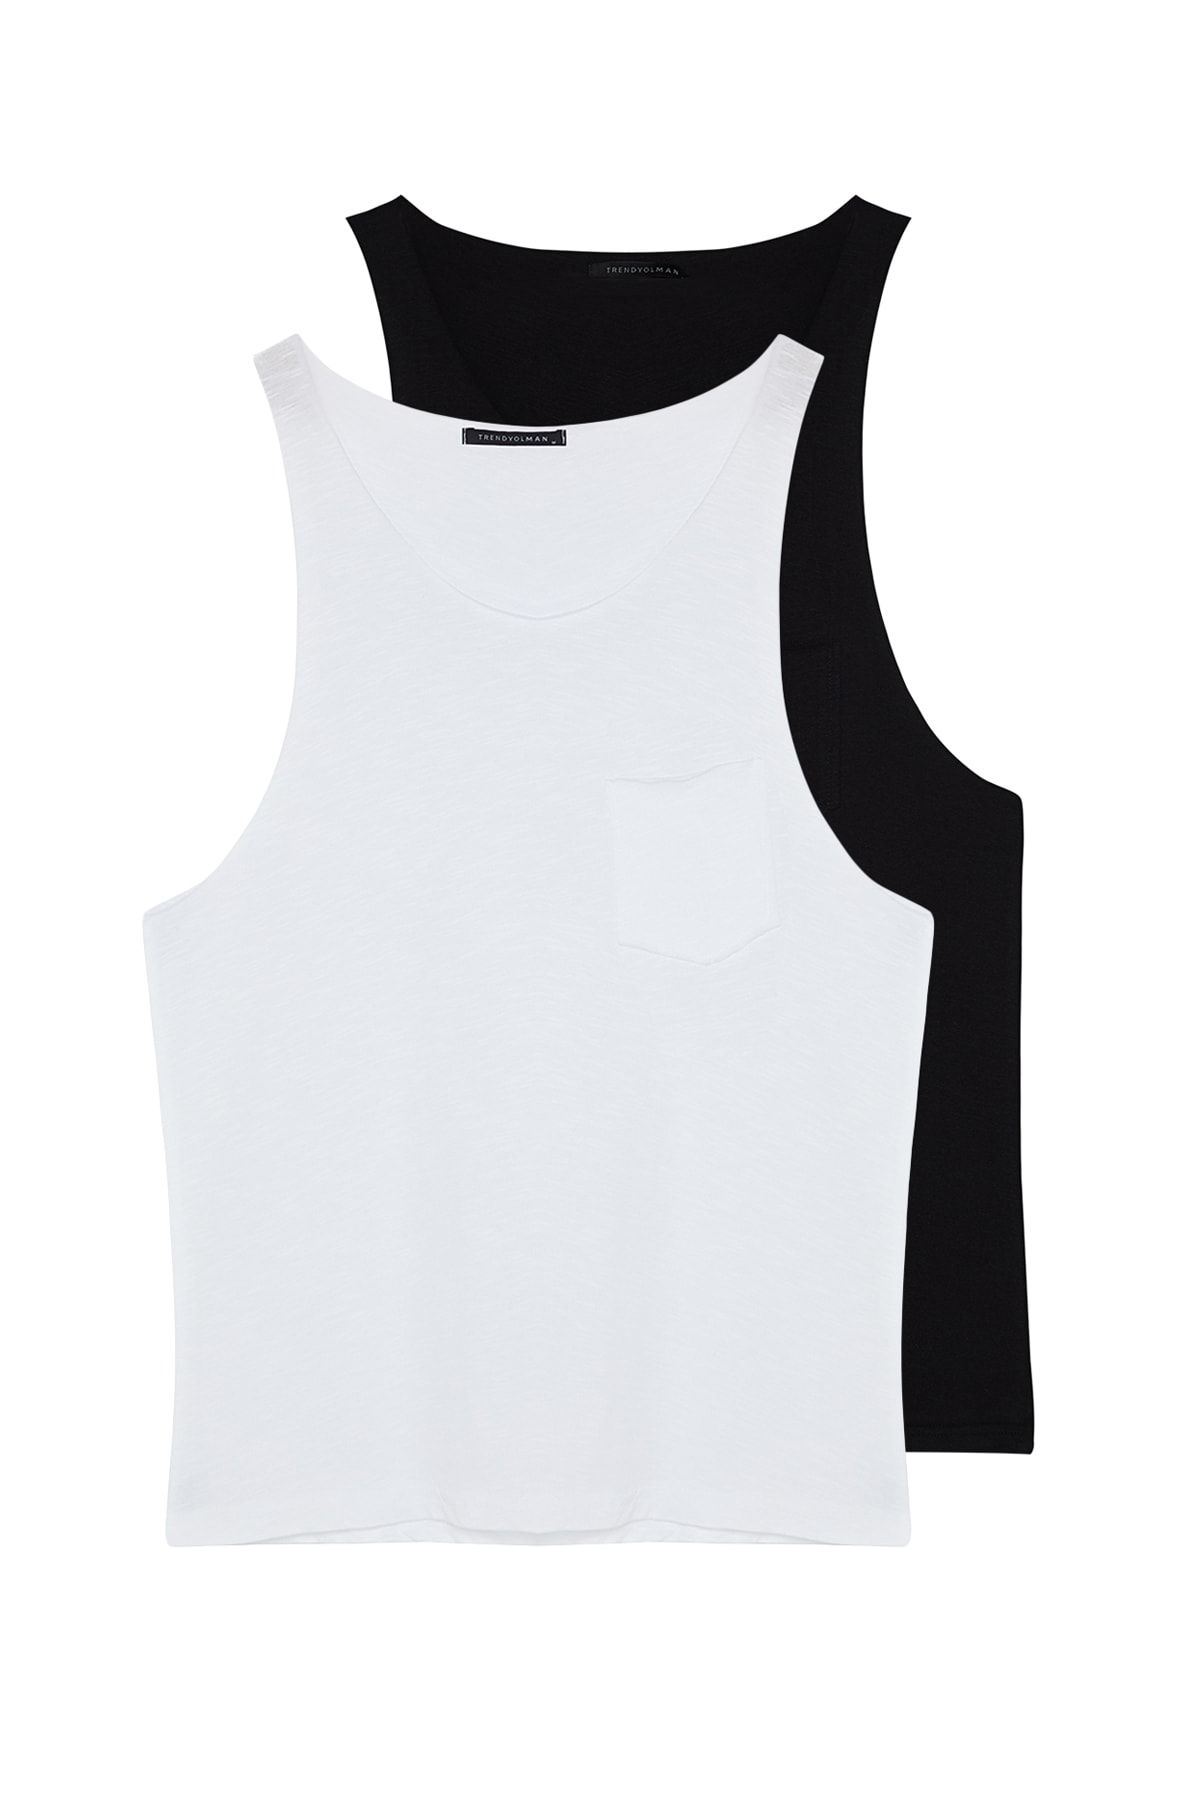 TRENDYOL MAN Siyah-Beyaz Erkek Basic Regular/Normal Kesim 2'li Paket Cepli %100 Pamuk Kolsuz T-Shirt/Atlet